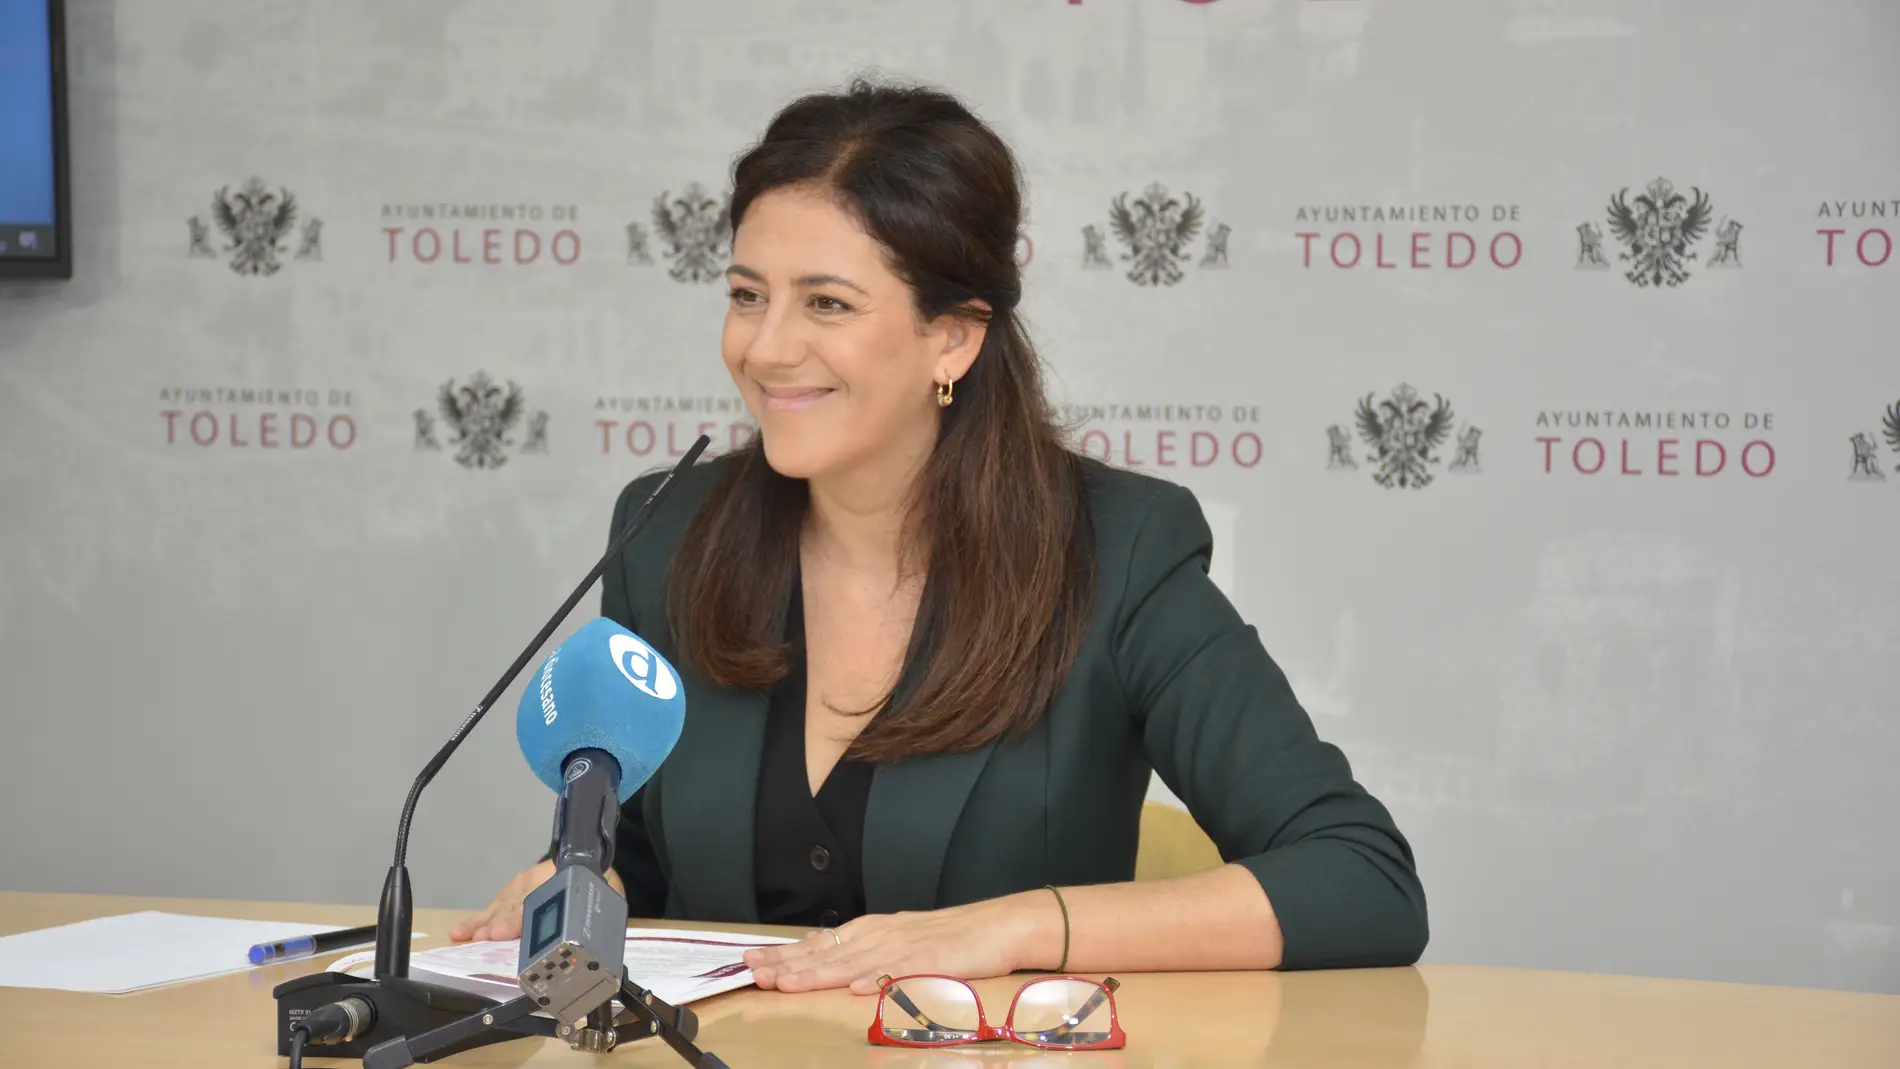  Toledo renovará el alumbrado público de La Legua y del paseo Juan Pablo II